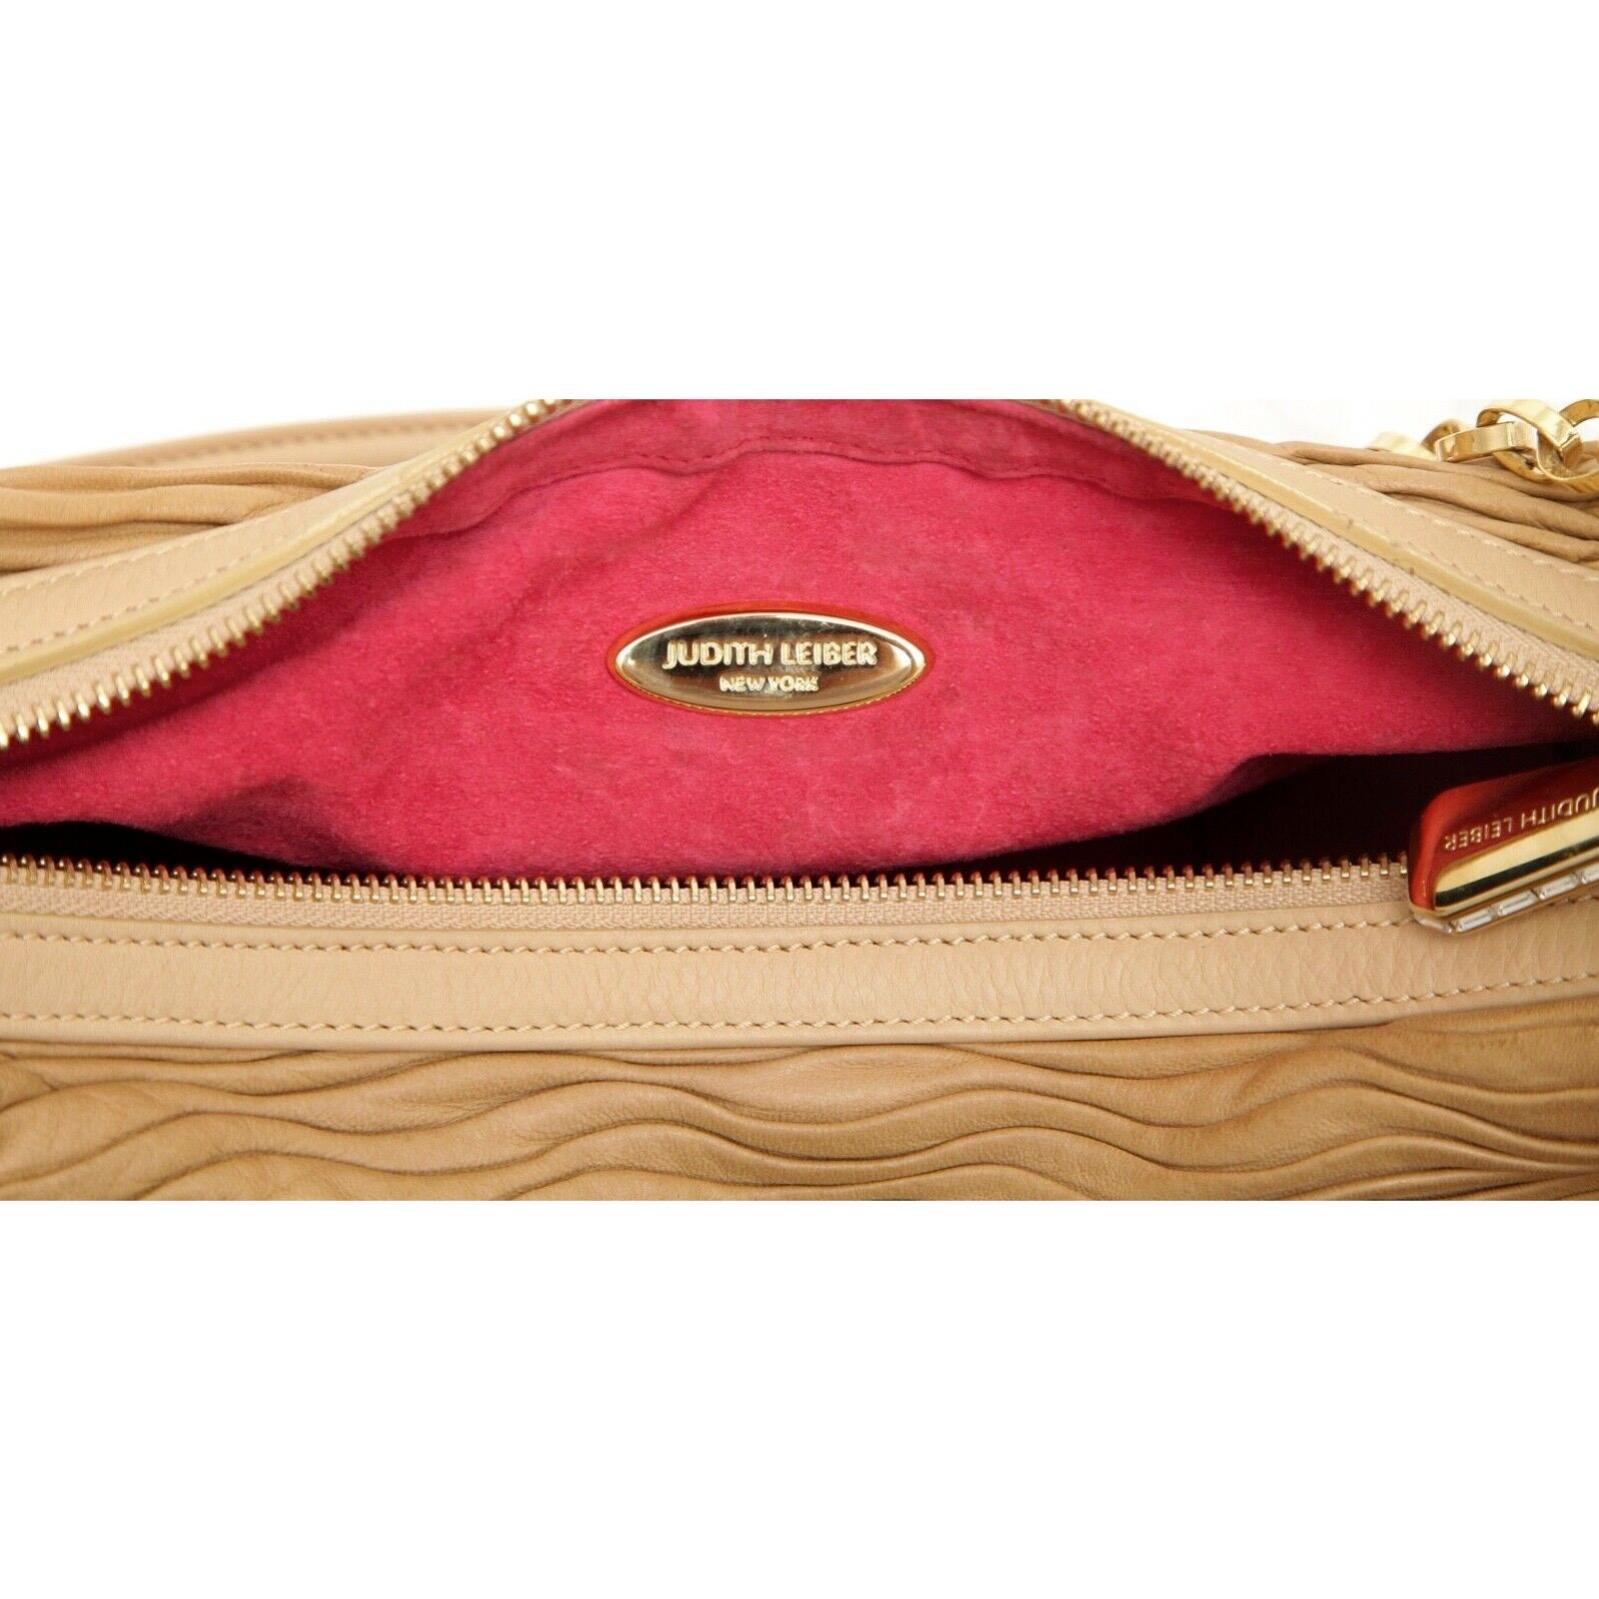 JUDITH LEIBER Leather Shoulder Bag Hobo Beige Gold-Tone HW Crystal Top Zipper For Sale 7